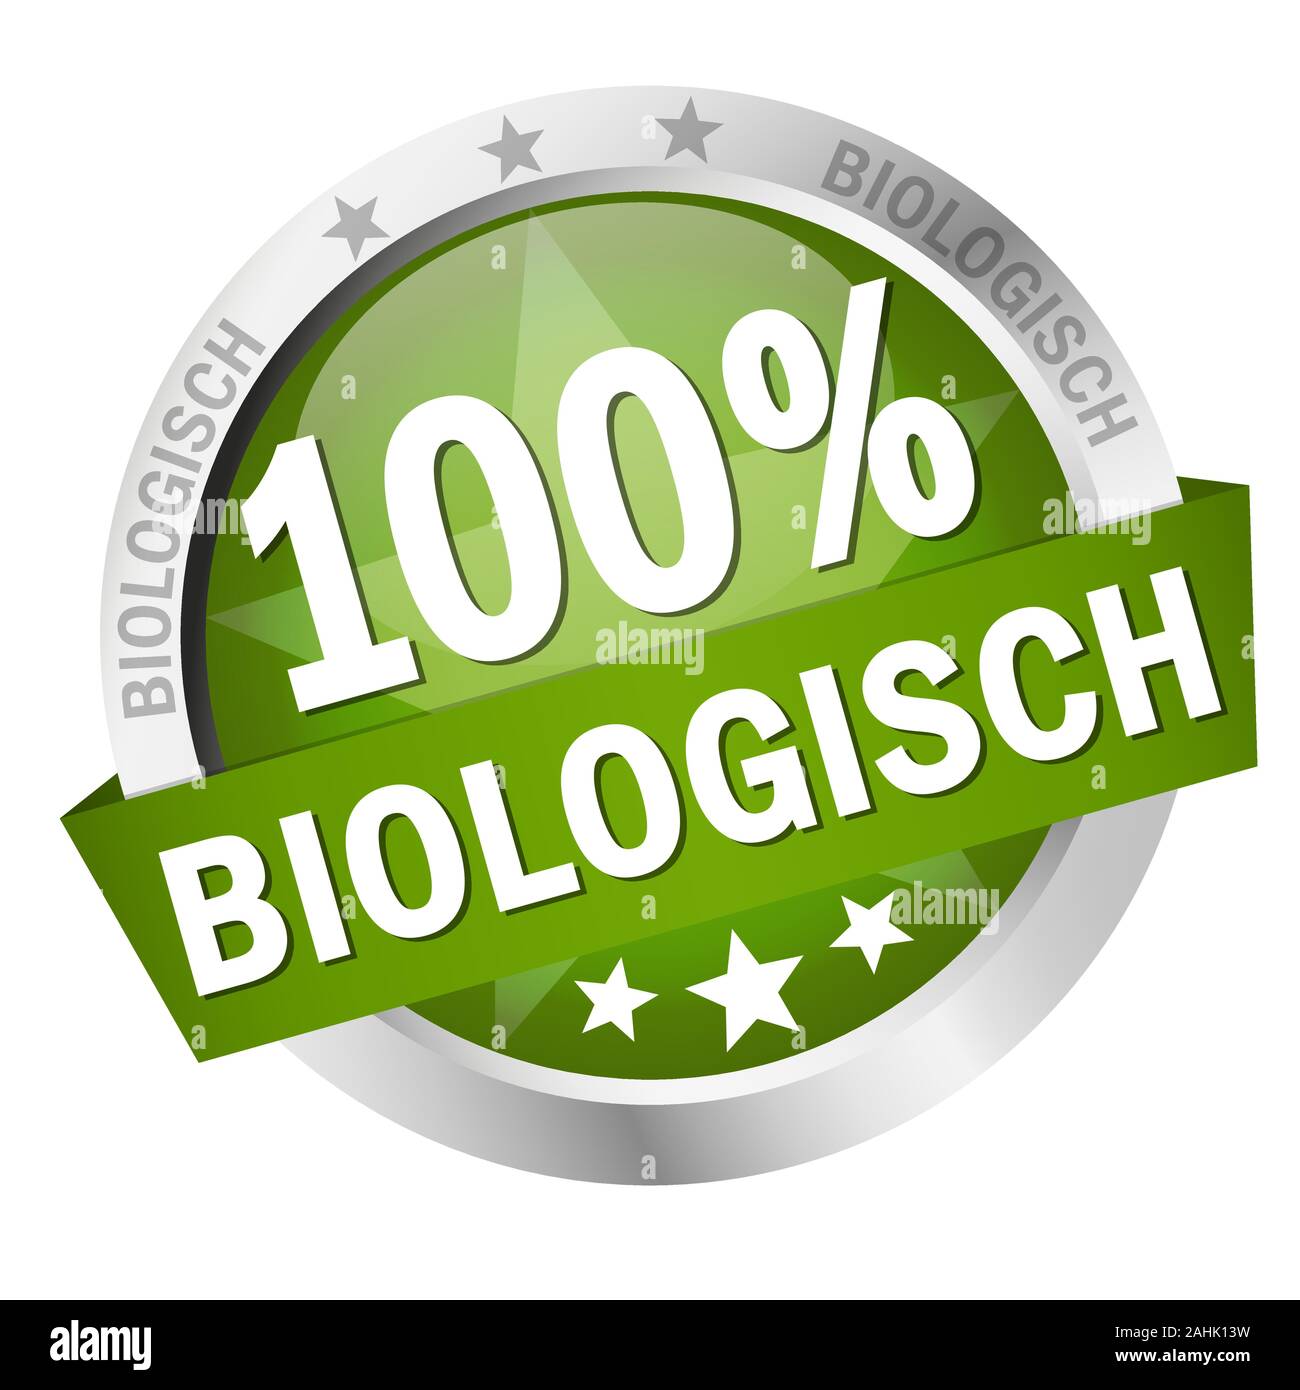 Vecteur EPS 10 avec bouton couleur ronde avec des bannières et du texte 100 % biologisch (en allemand) Illustration de Vecteur